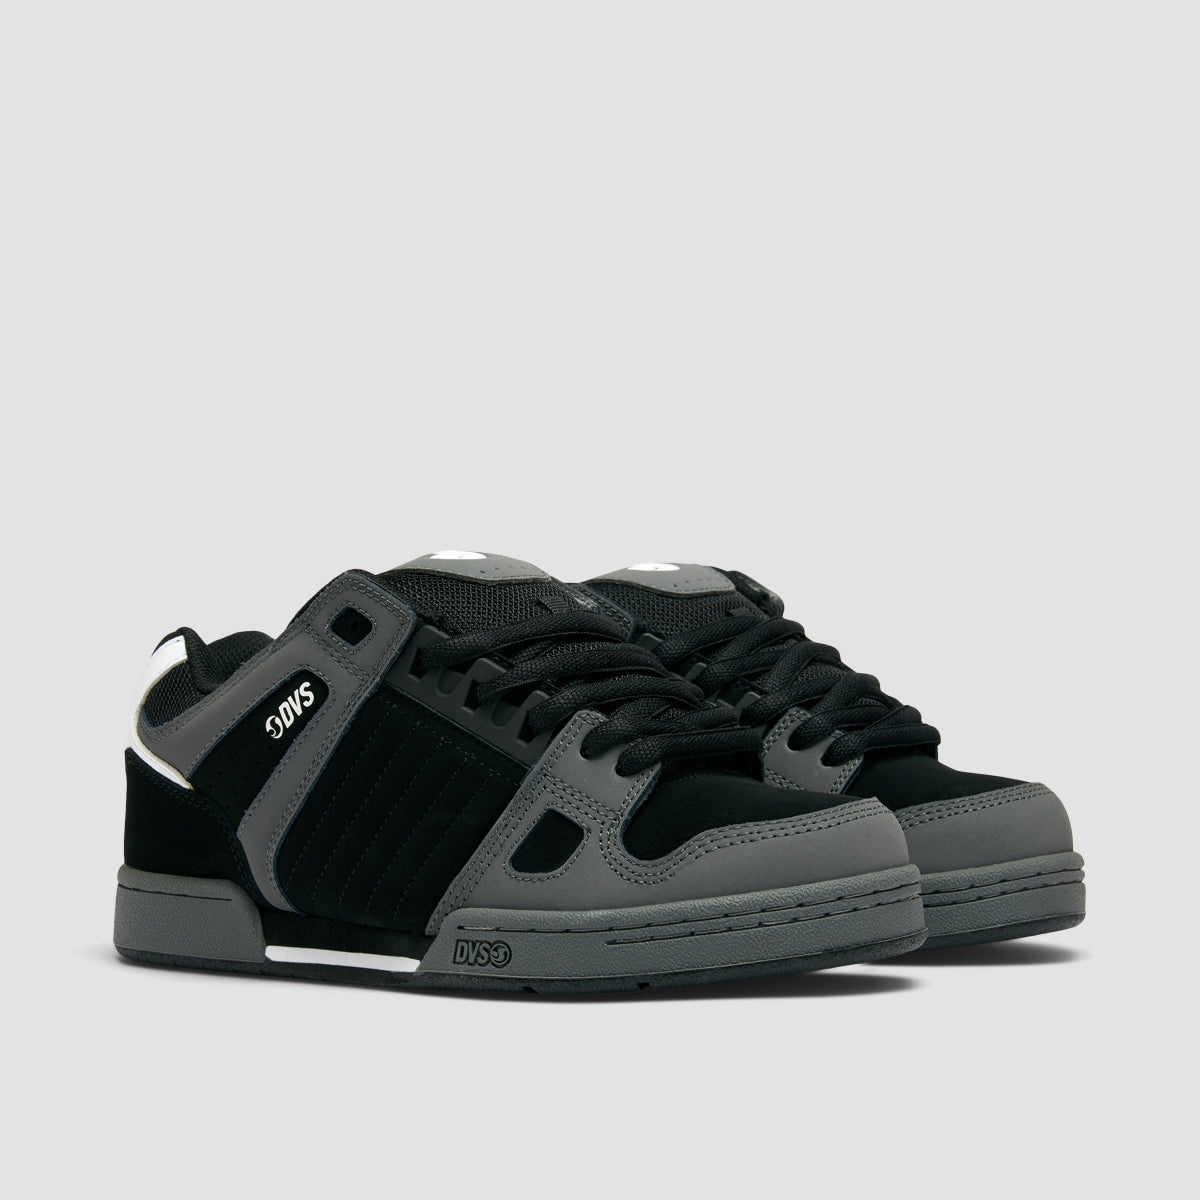 DVS Celsius Shoes - Charcoal/Black/White Nubuck